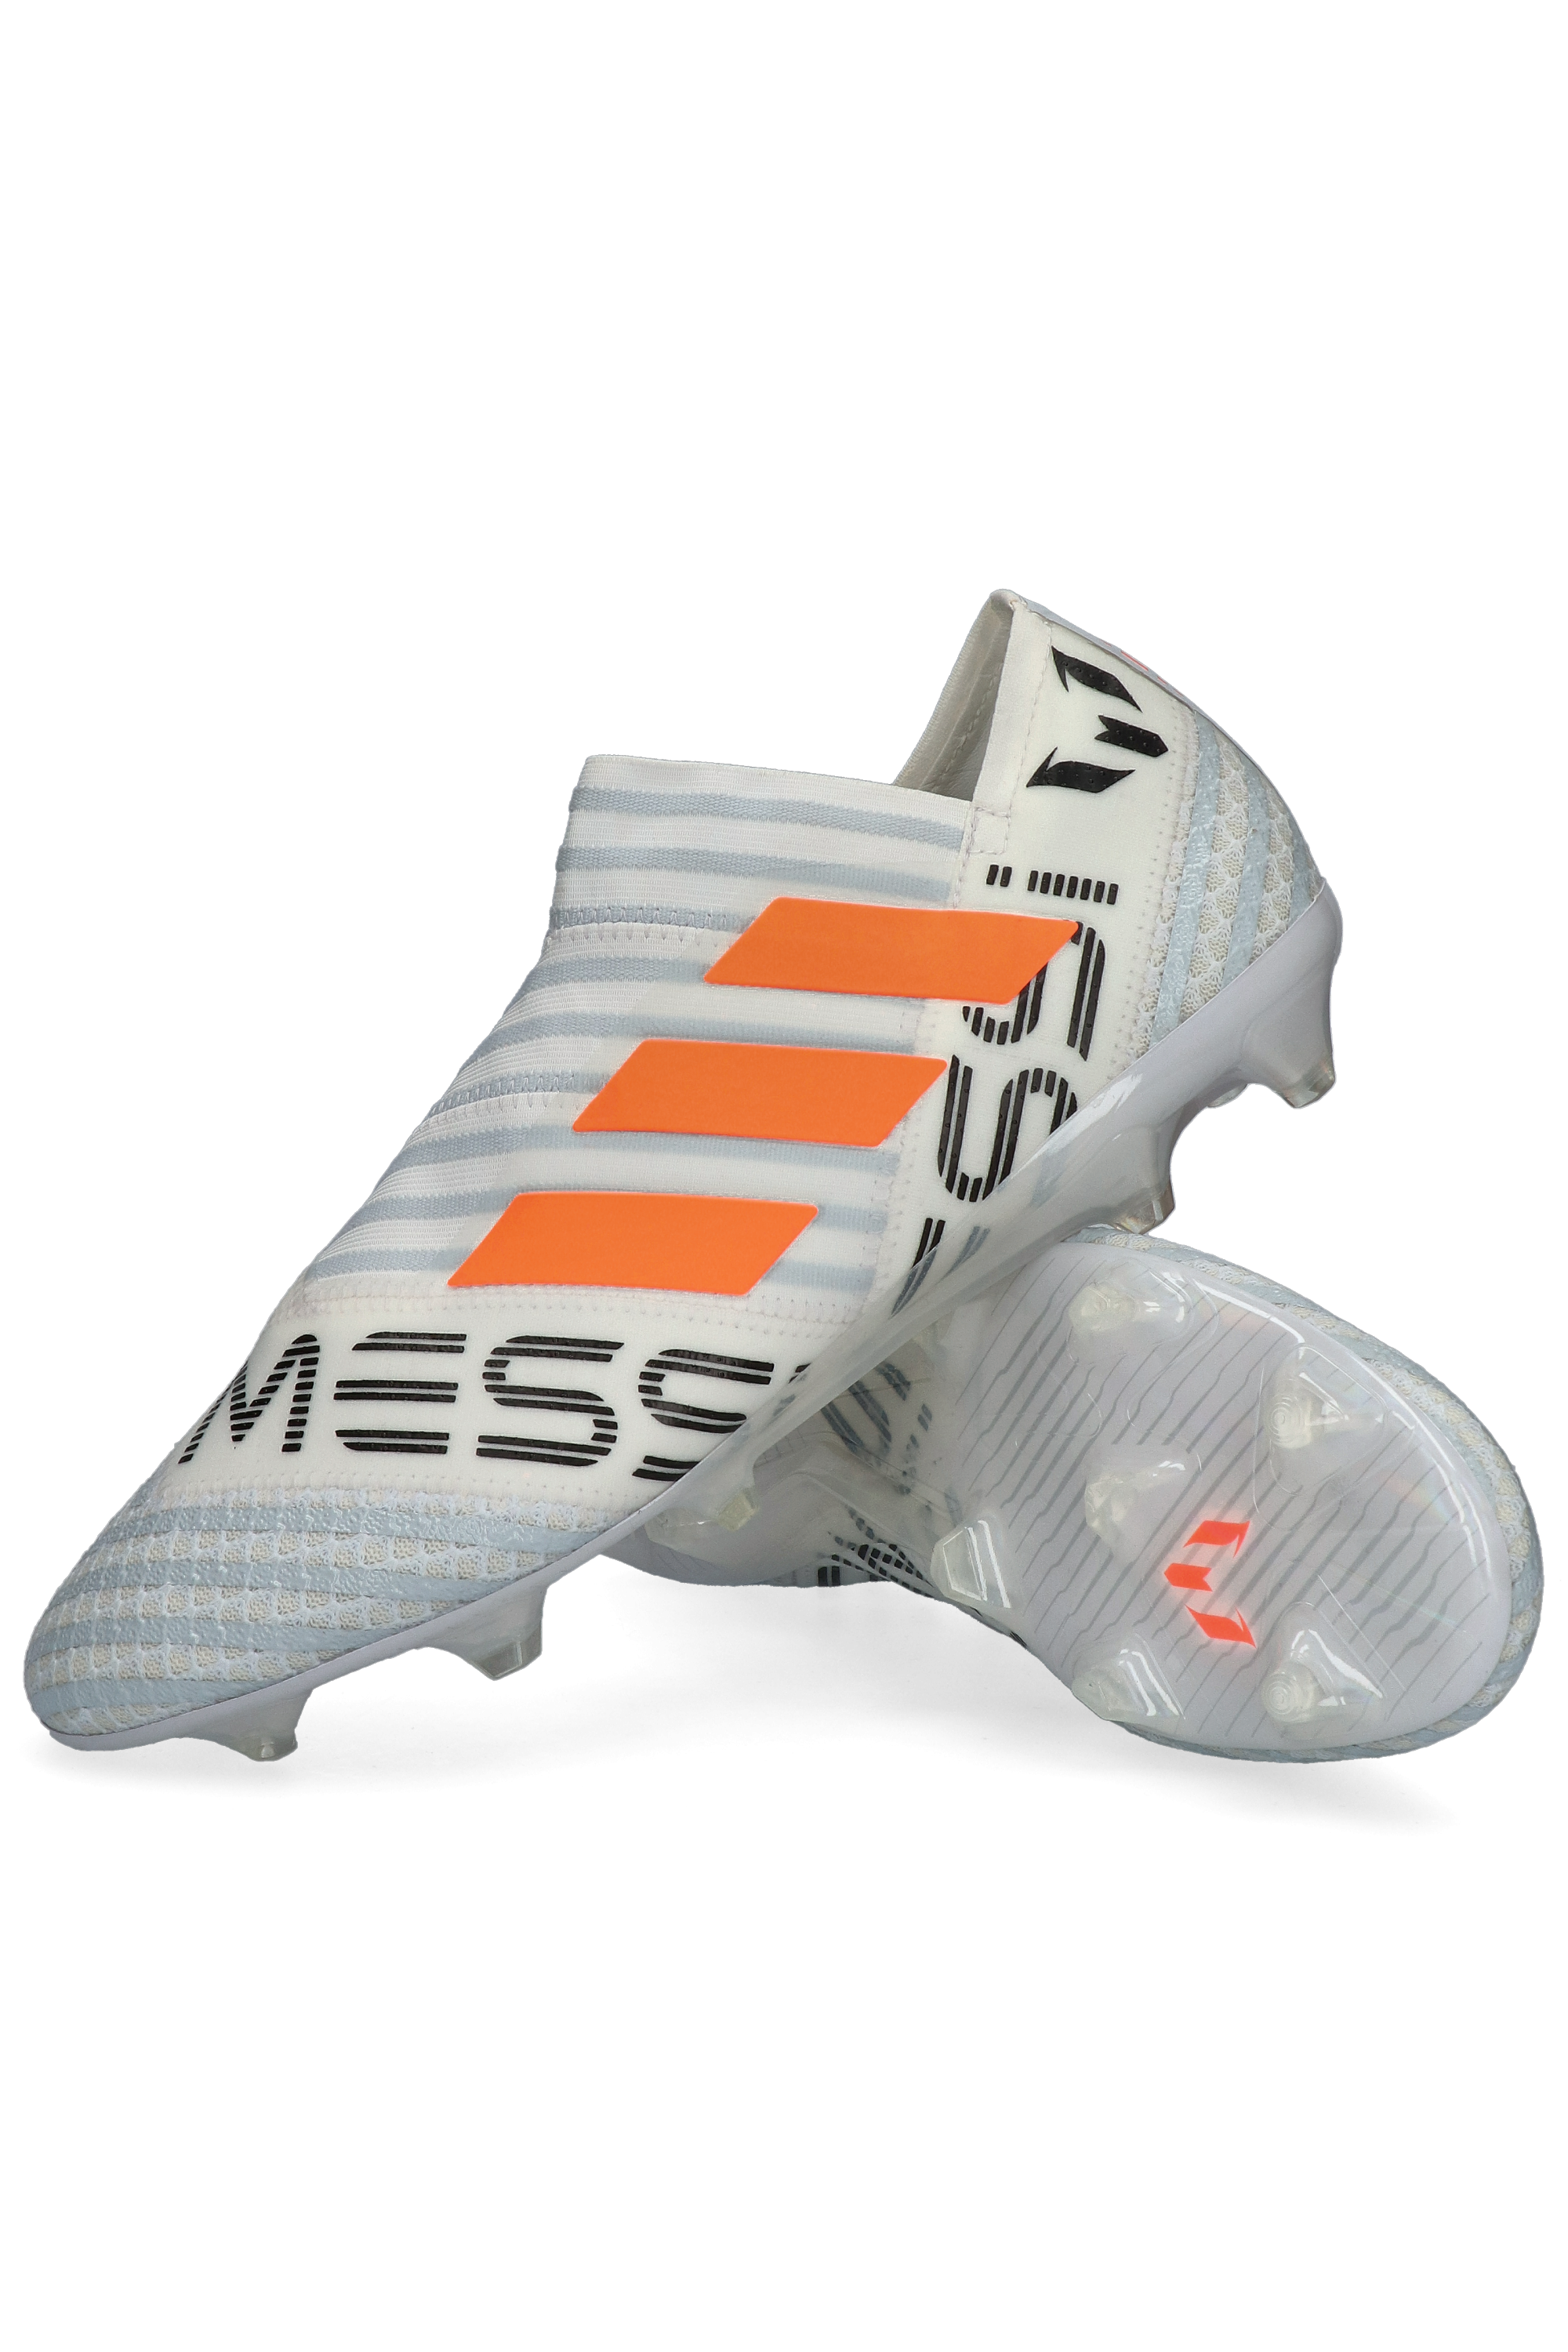 Oceano Ascensor Cerebro adidas Nemeziz Messi 17+ 360 Agility FG | R-GOL.com - Football boots &  equipment